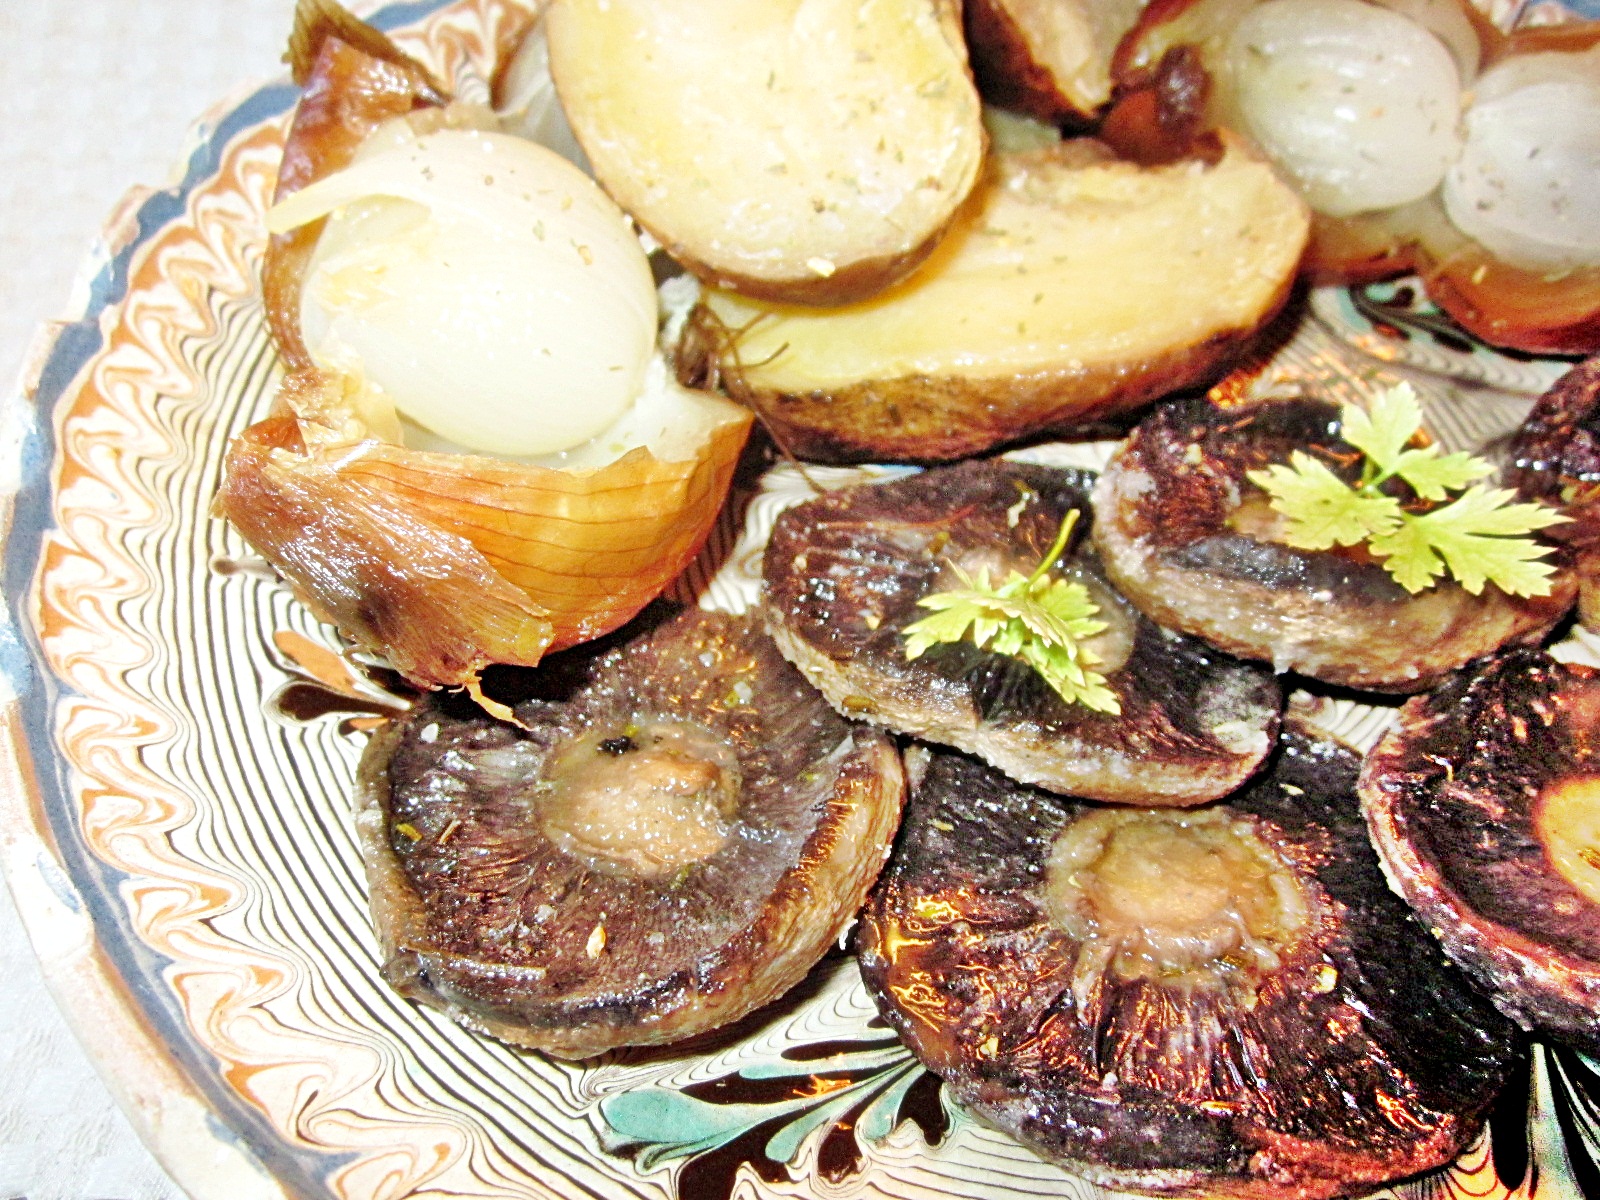 Cartofi, ceapa si ciuperci coapte in jar